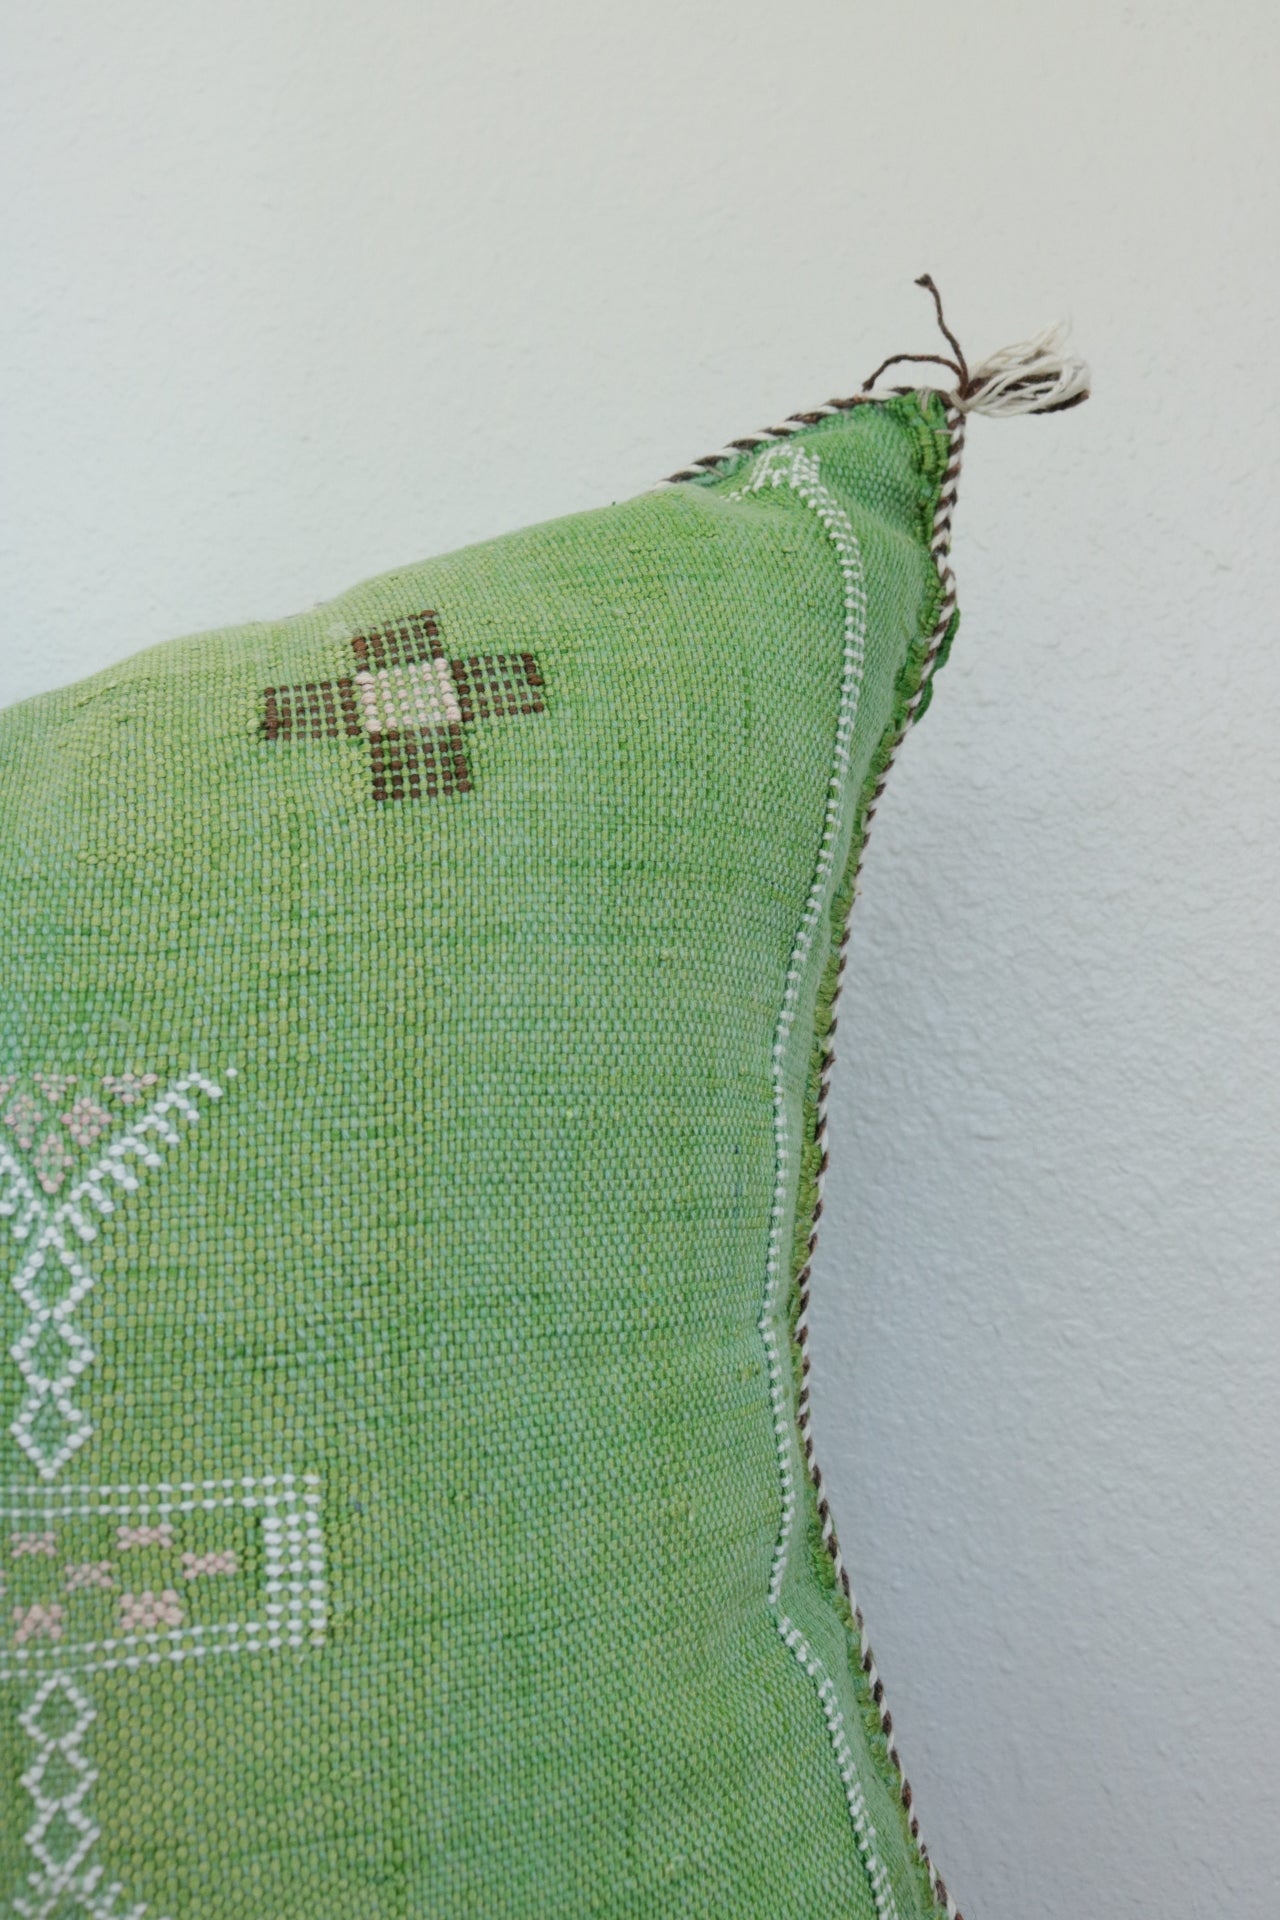 Green Moroccan Cactus Silk Sabra Pillow